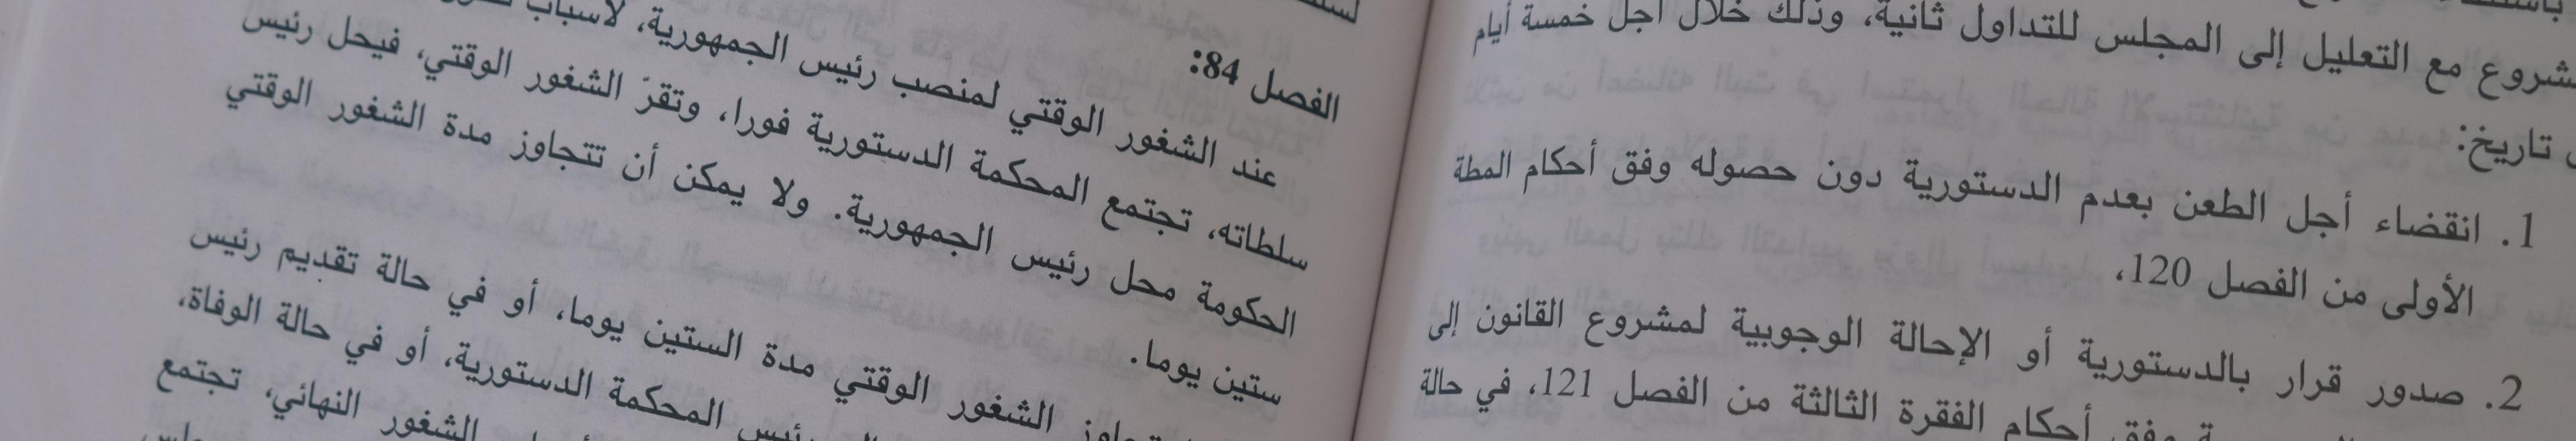 Ausschnitt aus dem Text der tunesischen Verfassung